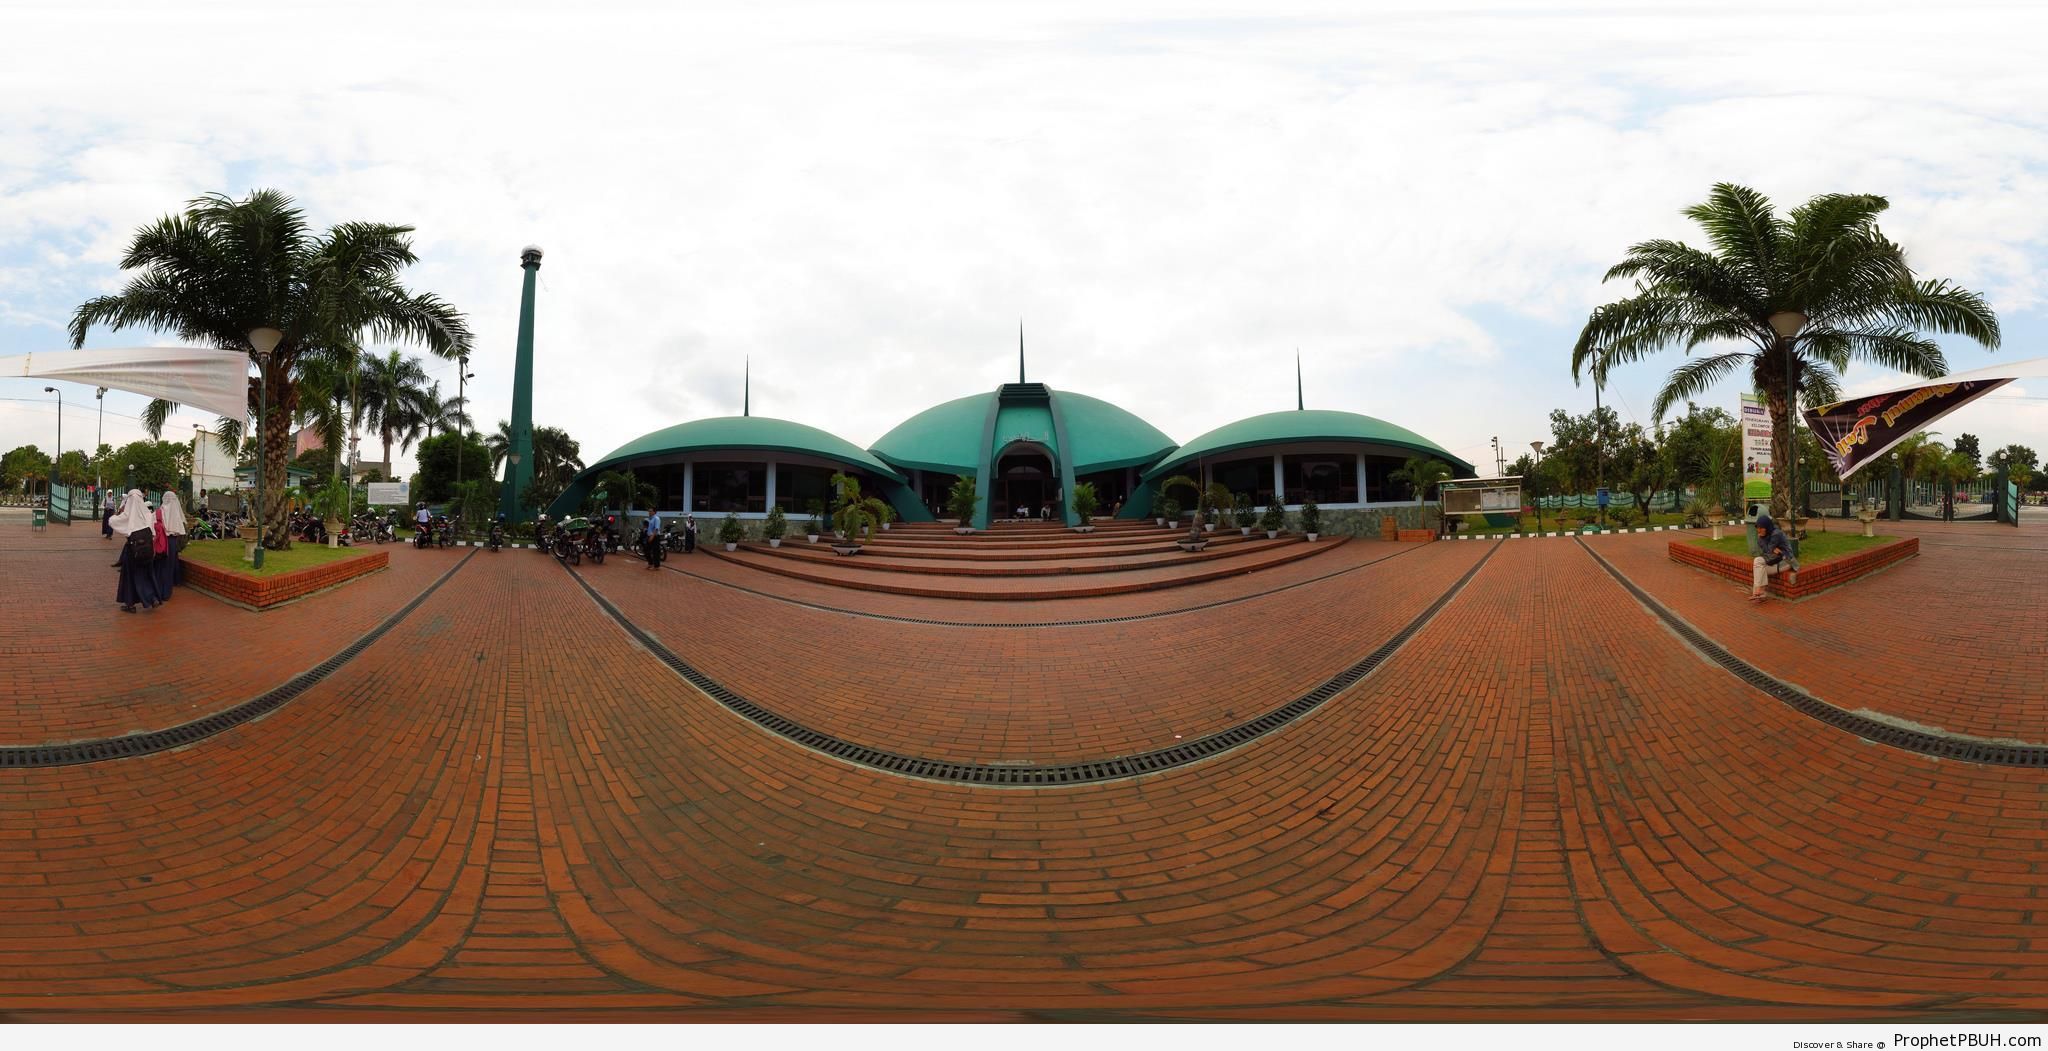 Panorama of Masjid Jami al-Bait al-Amin in Jember, Indonesia - Indonesia -Picture